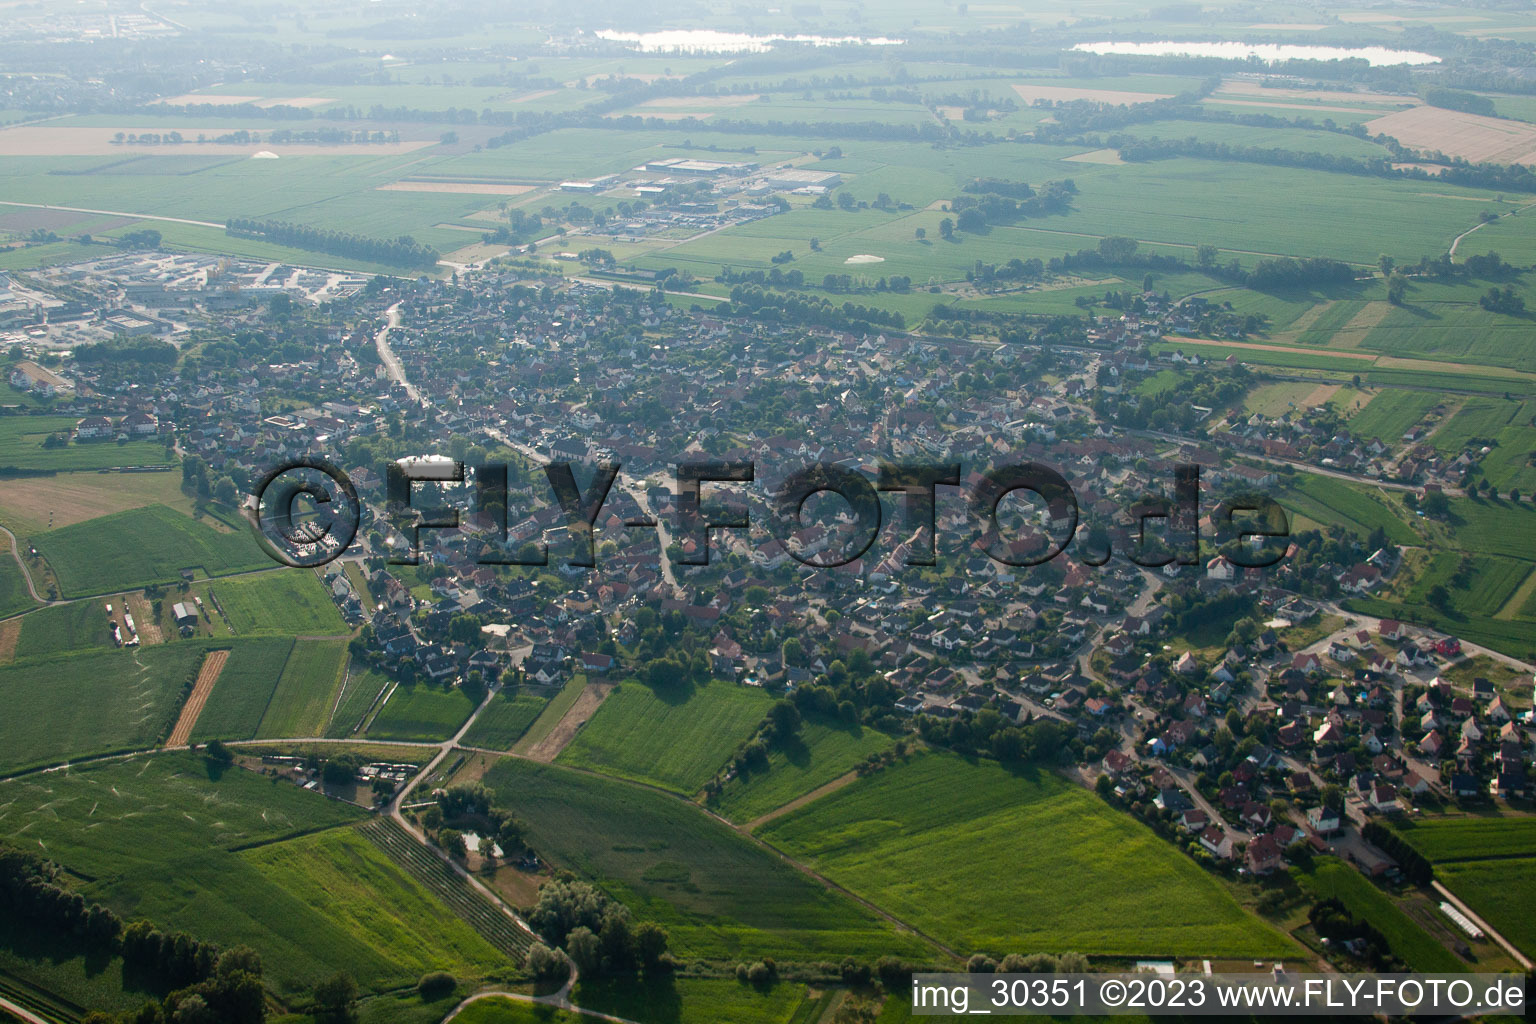 Kilstett im Bundesland Bas-Rhin, Frankreich aus der Luft betrachtet